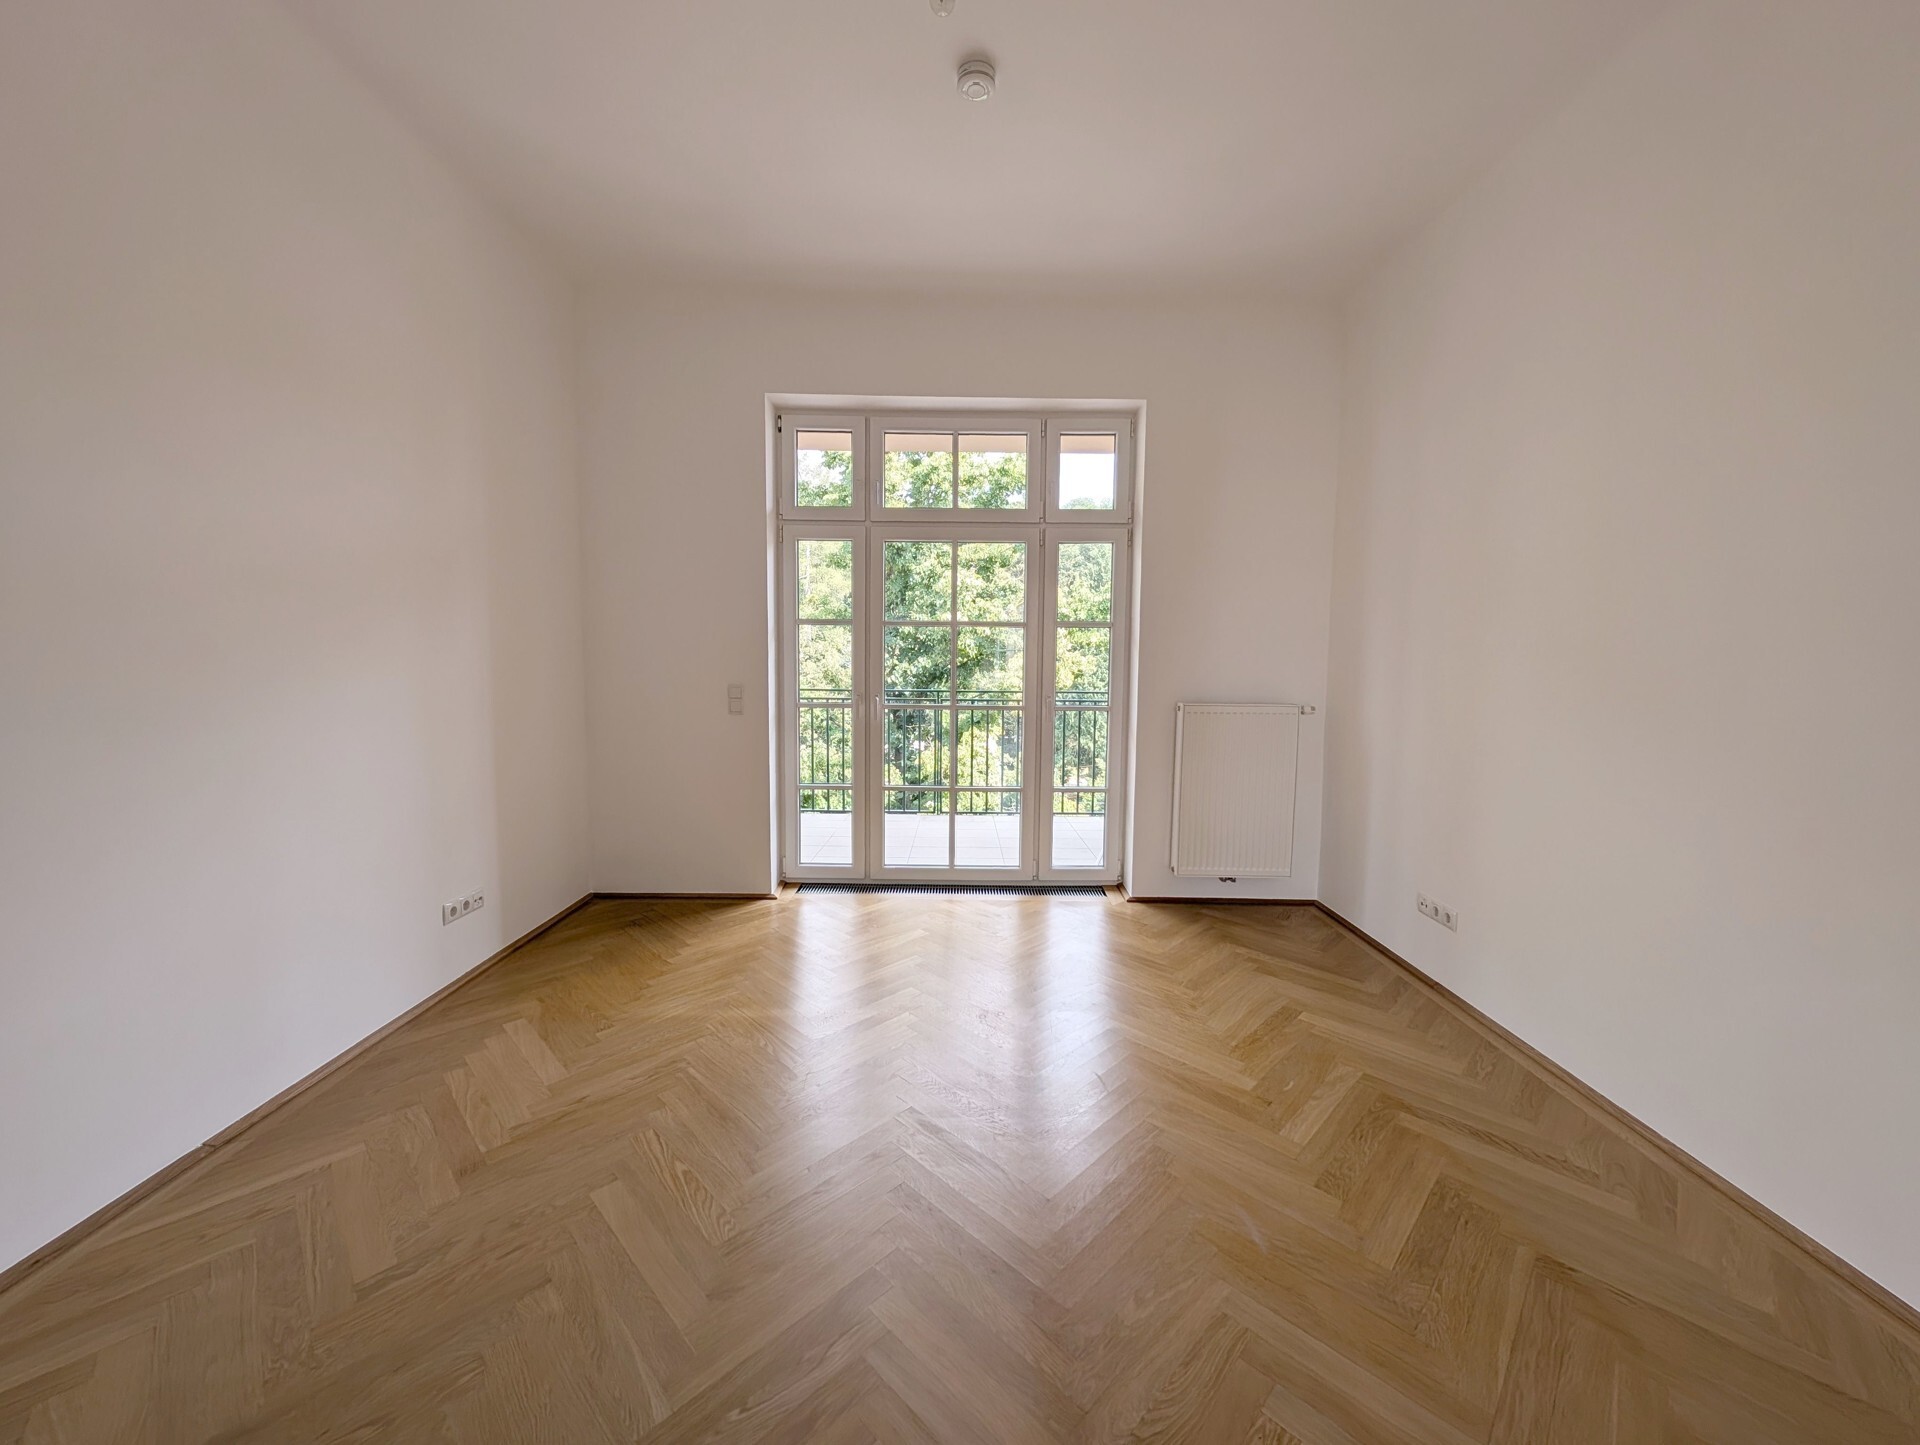 Wunderbare 4-Zimmer Altbau-Wohnung mit Loggia an der Lainzer Straße in 1130 Wien zu mieten